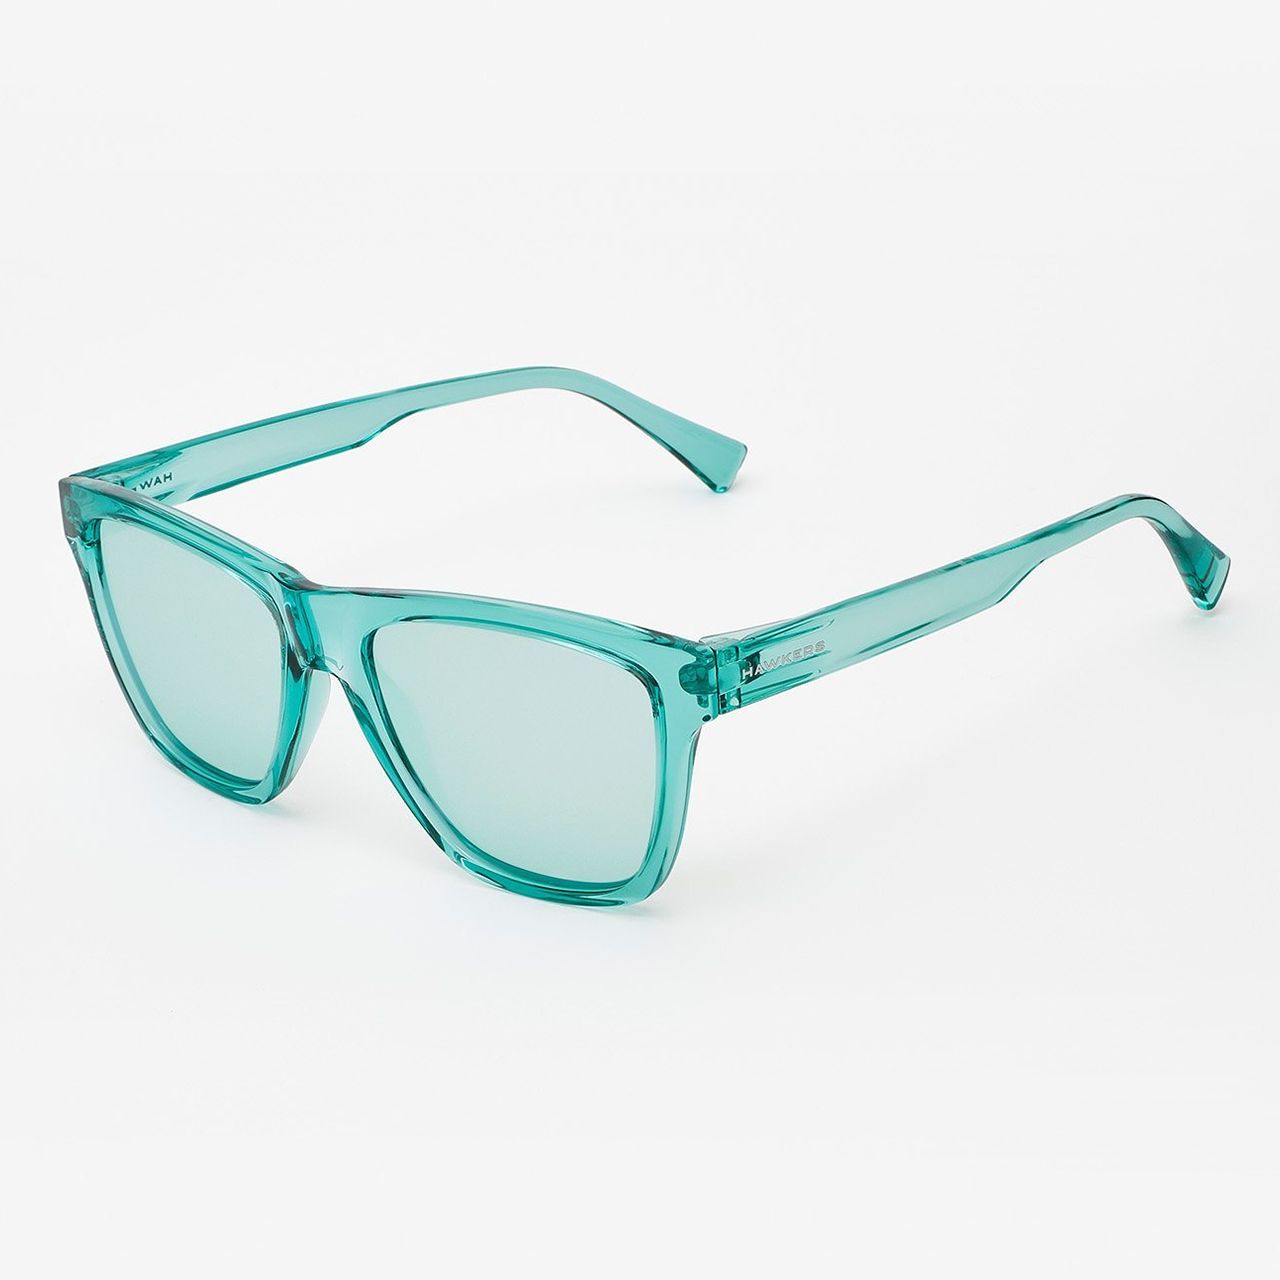  عینک آفتابی زنانه هاوکرز سری Tiffany Blue Chrome One Ls مدل LIFTR13 -  - 7